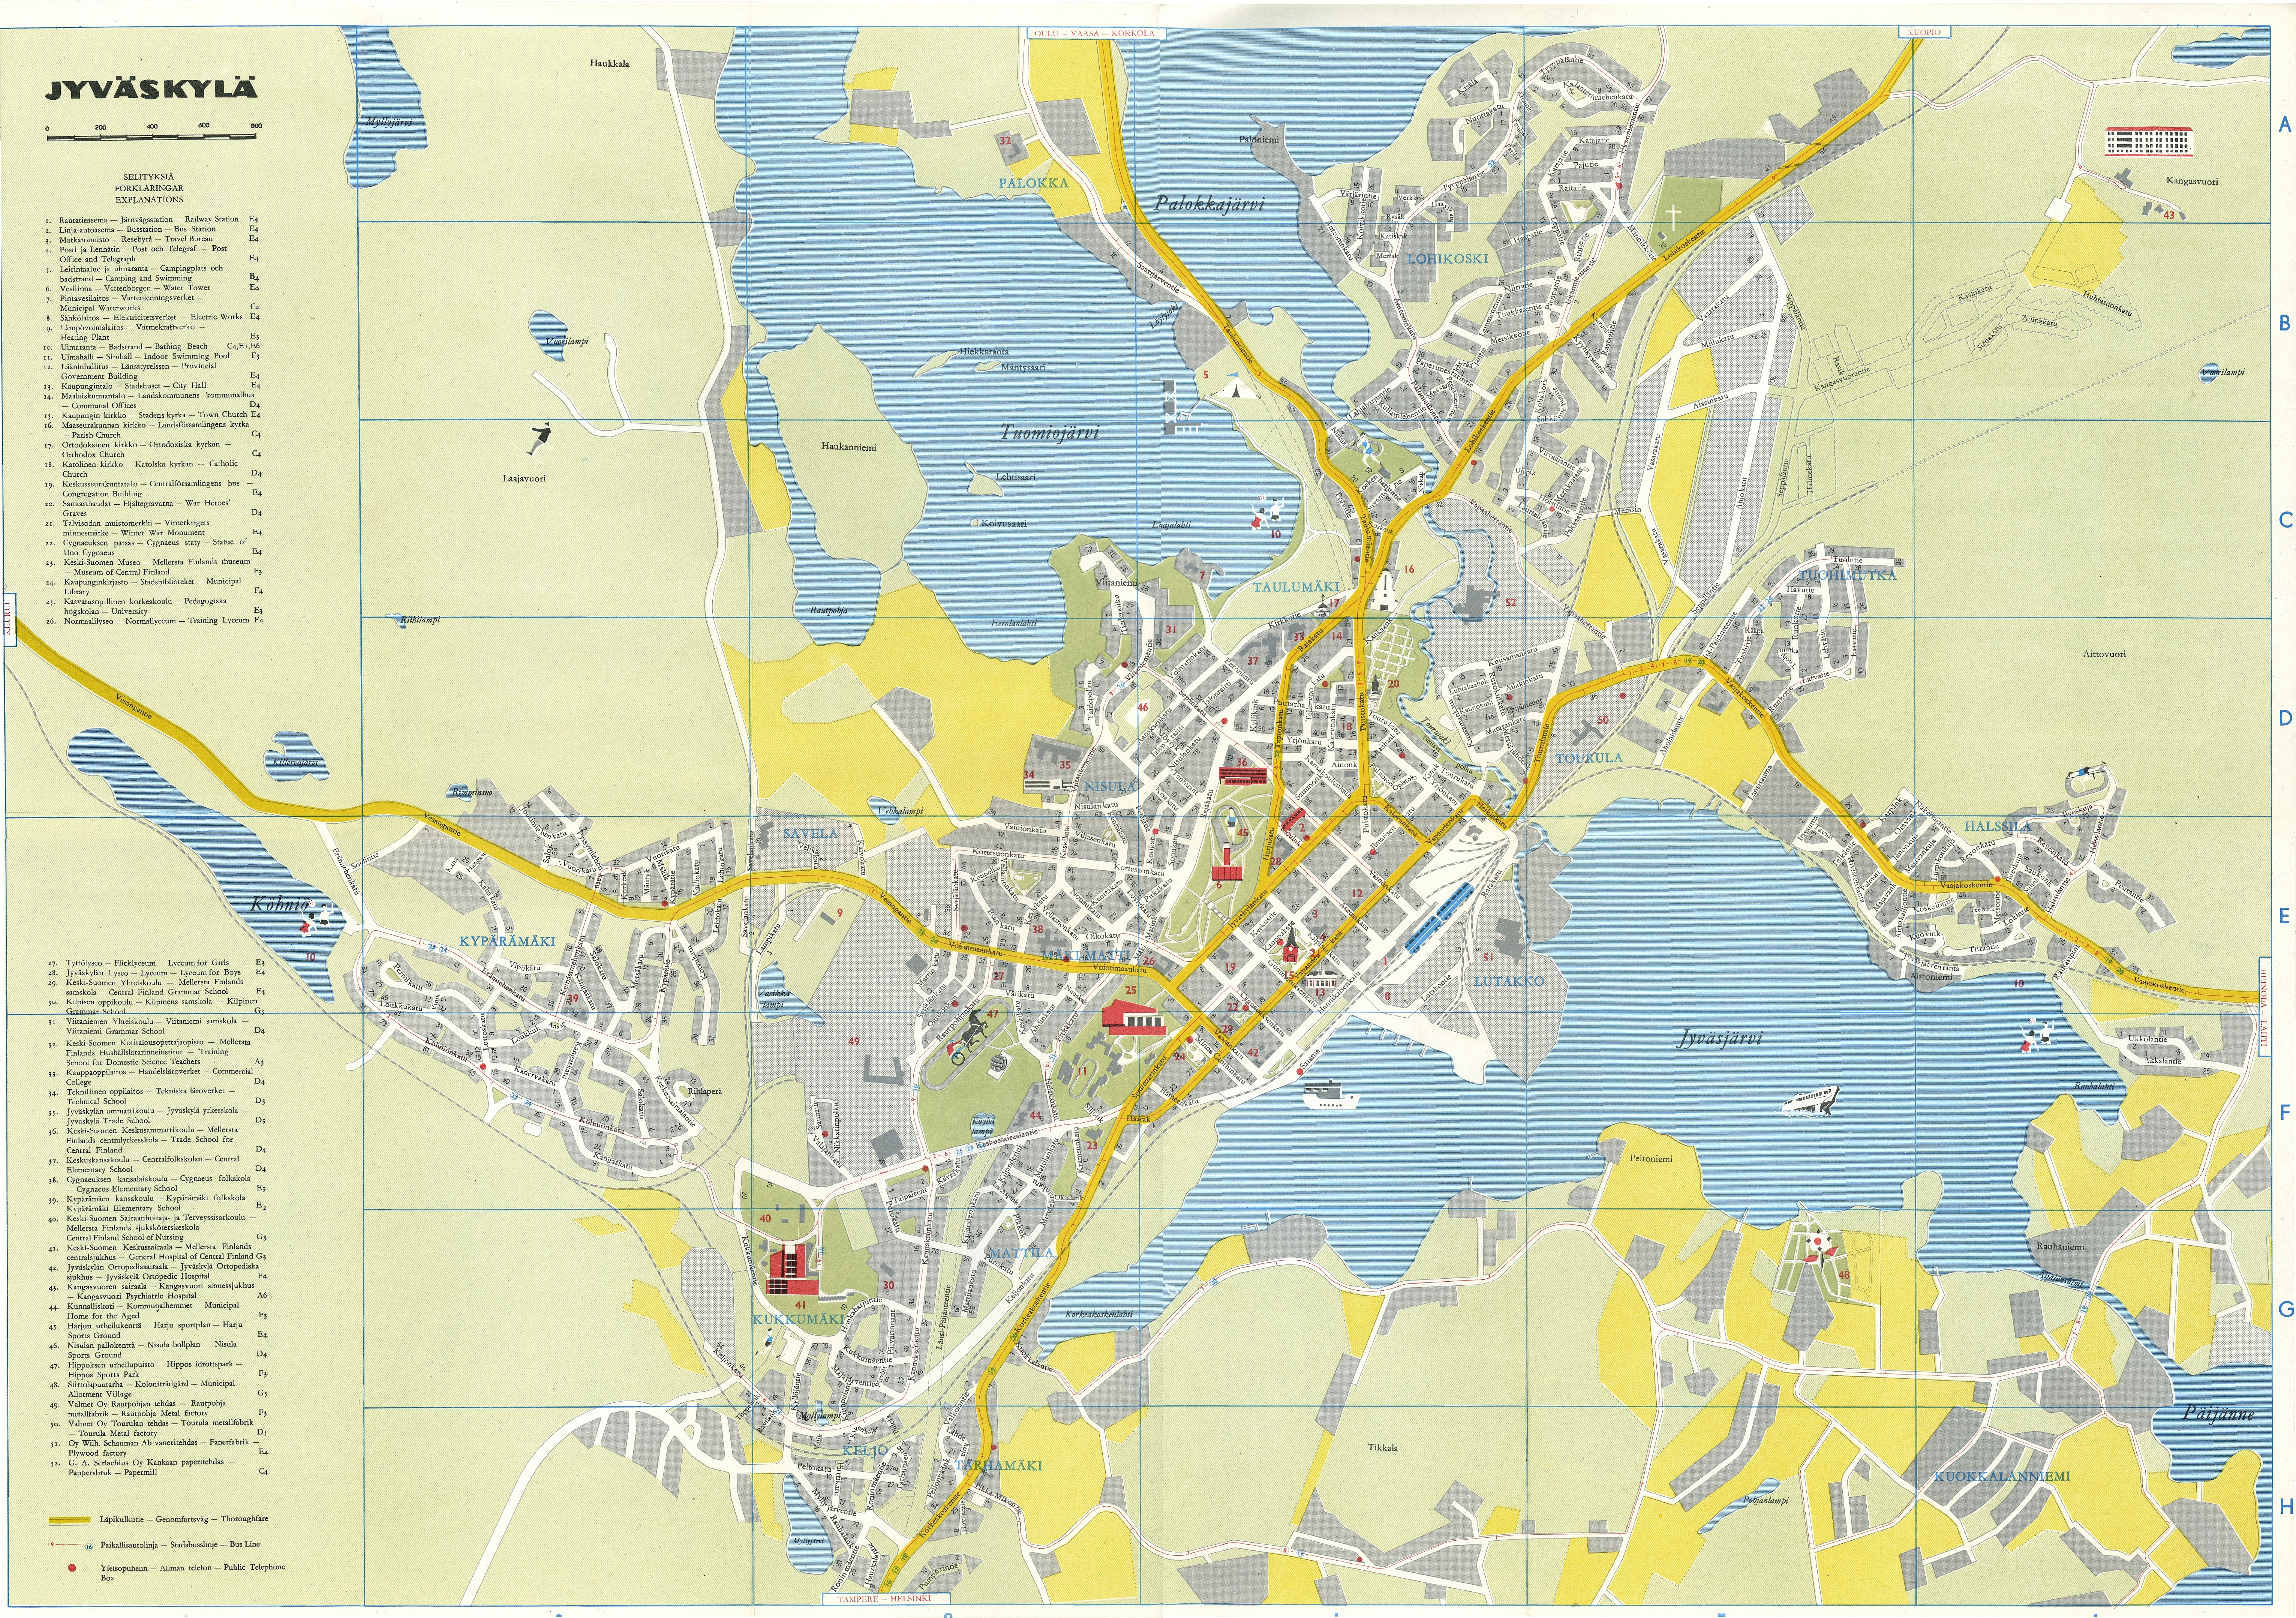 Tutustu 32+ imagen jyväskylä kartta 1970